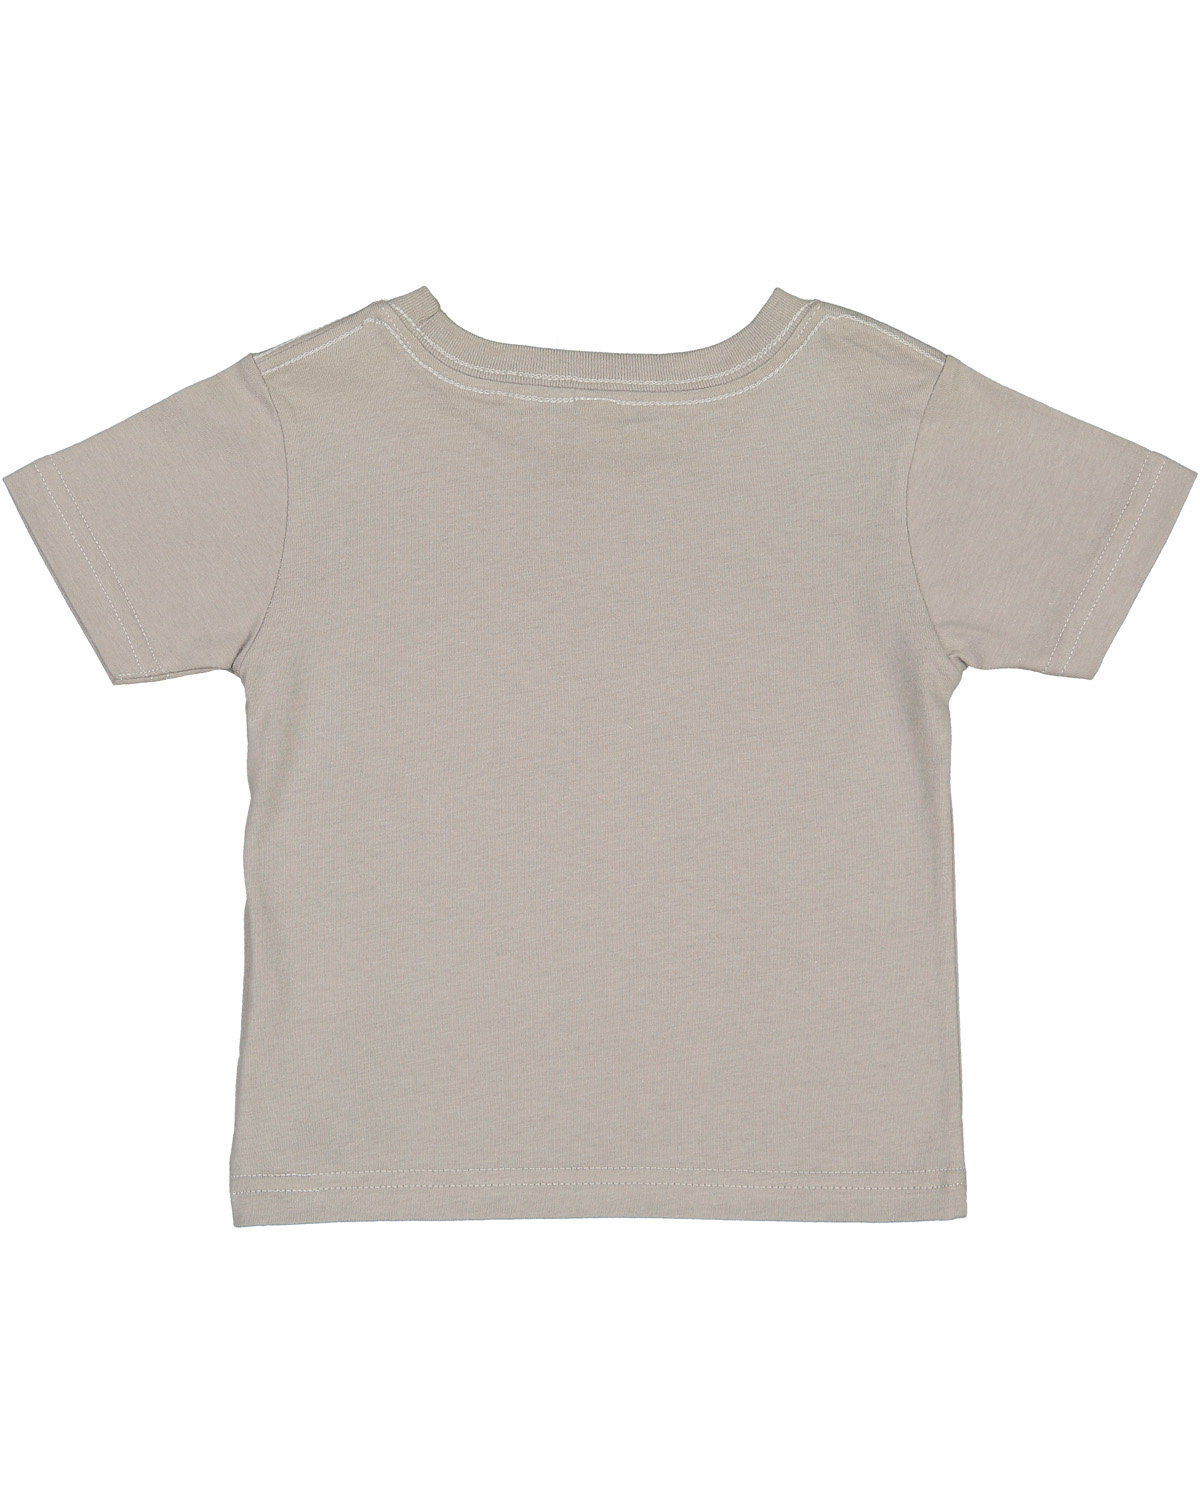 Rabbit Skins Infant Fine Jersey T-Shirt | alphabroder